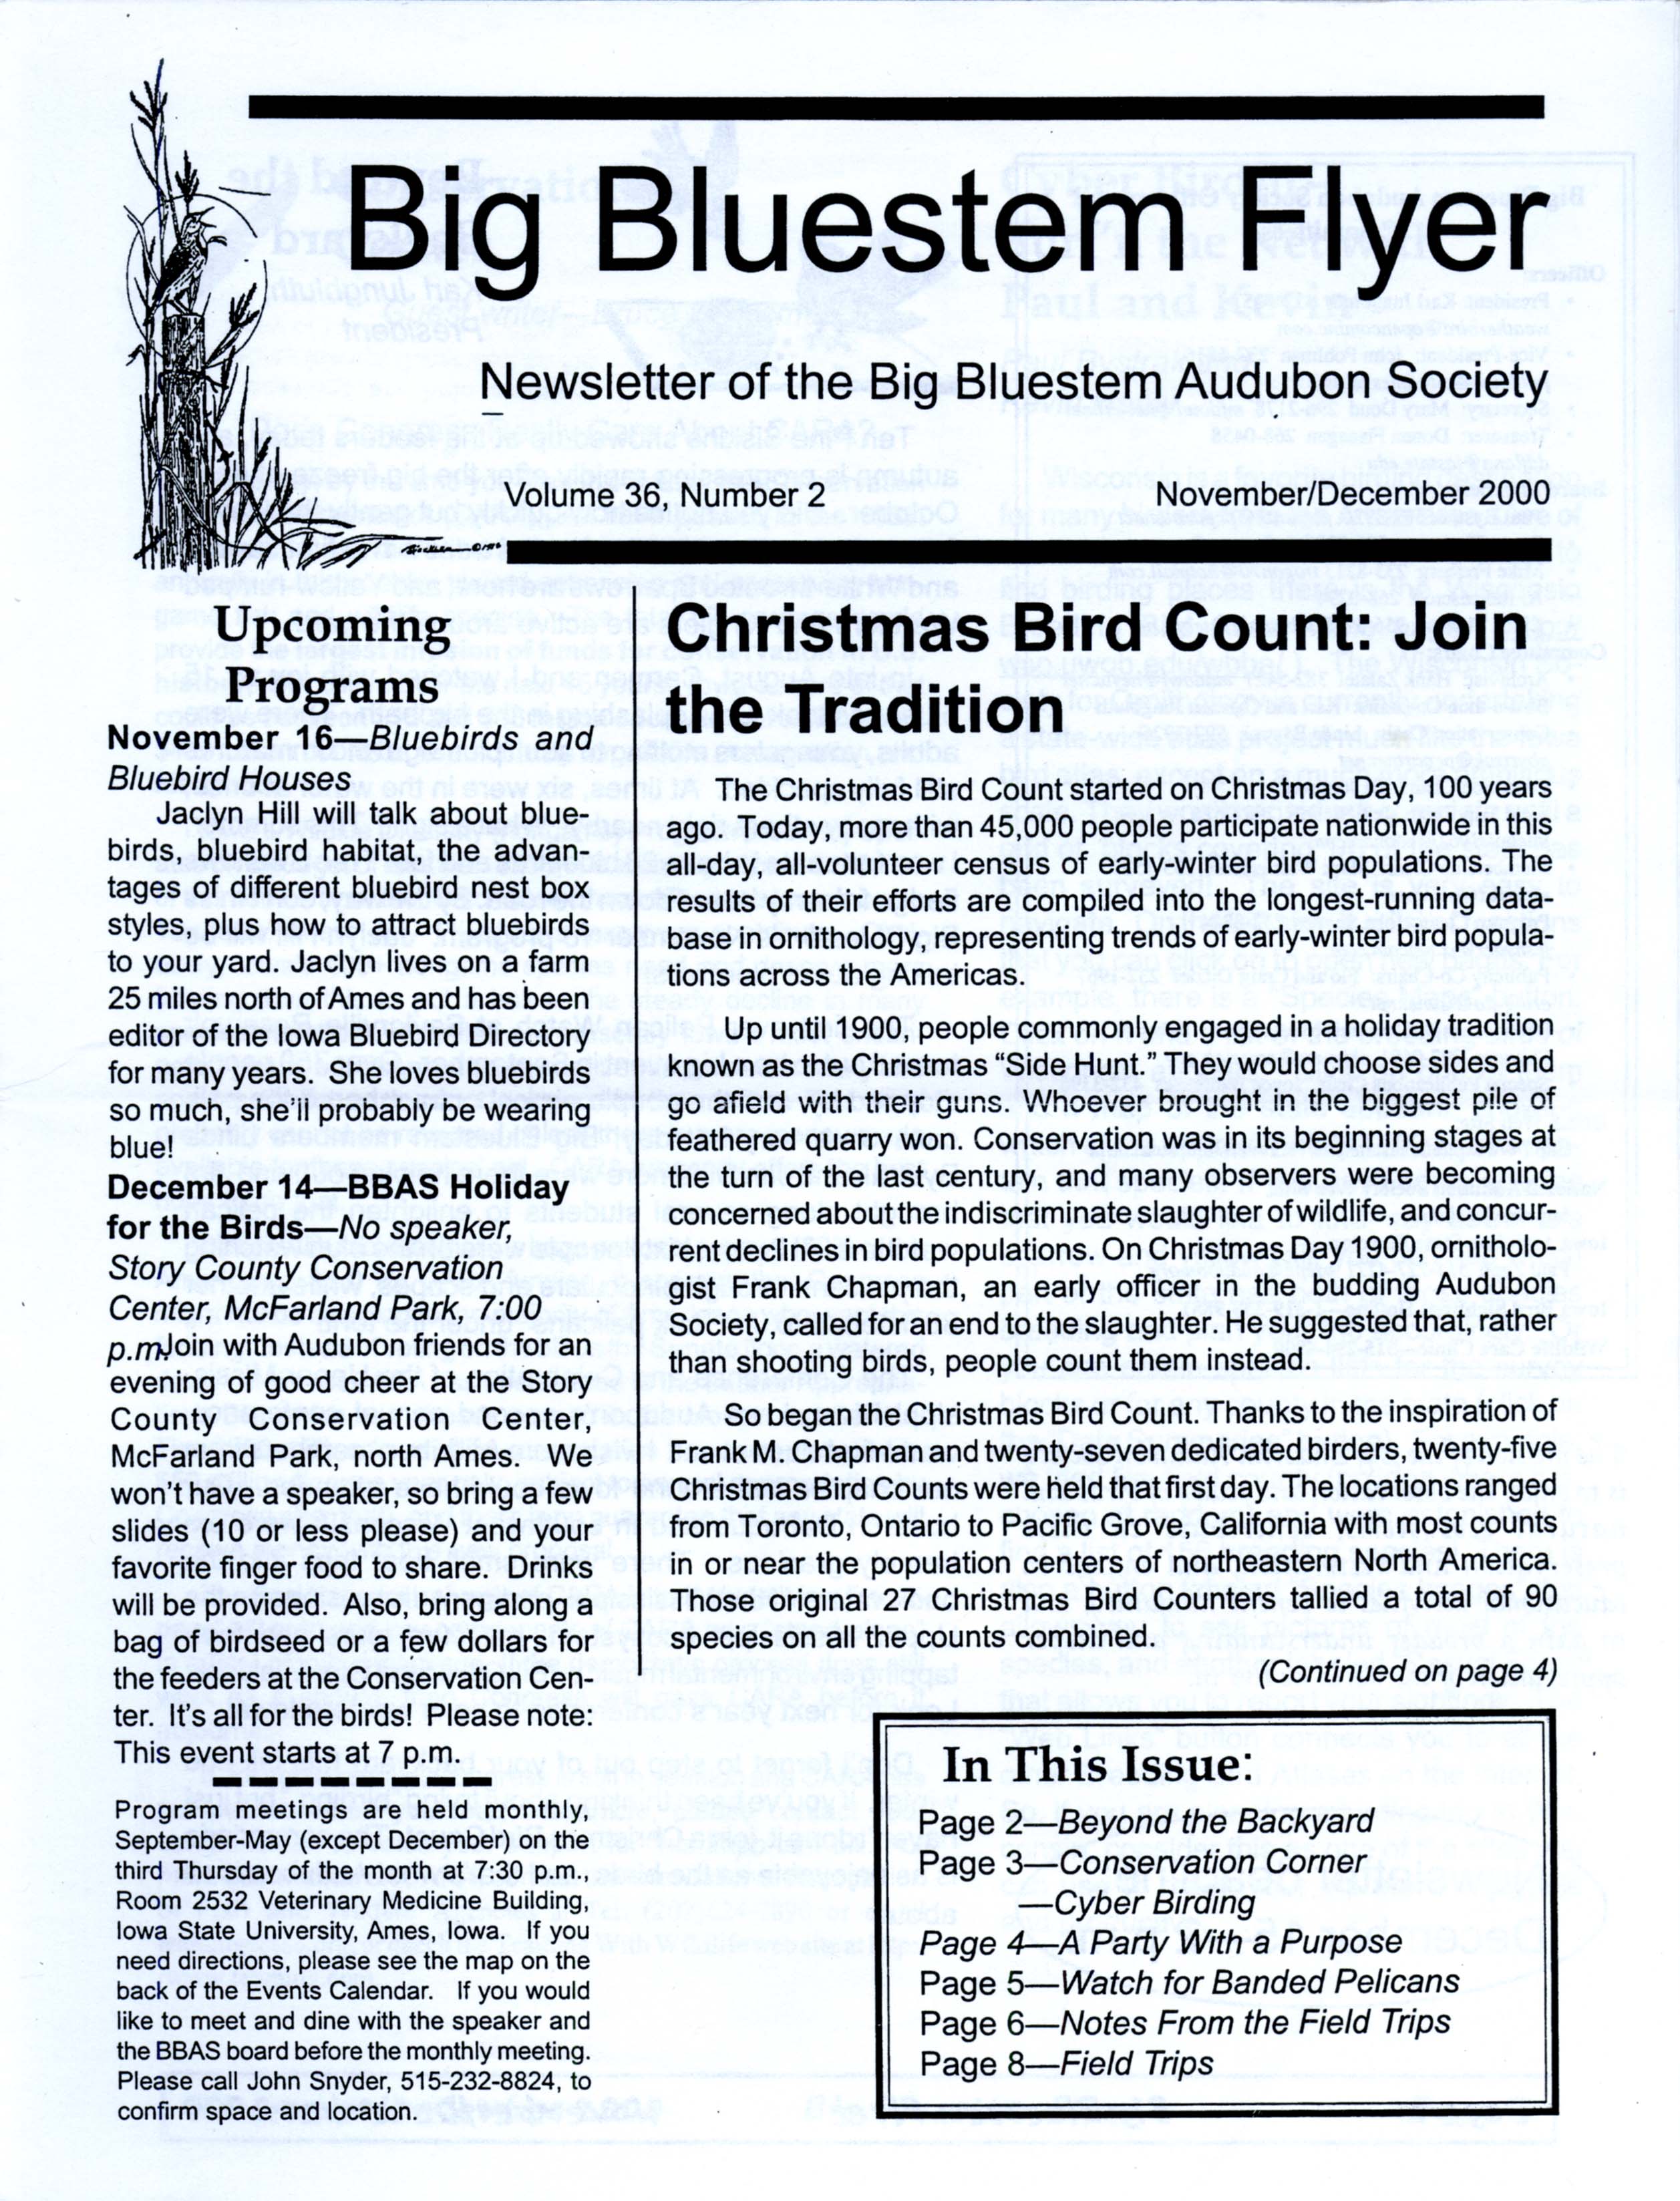 Big Bluestem Flyer, Volume 36, Number 2, November/December 2000